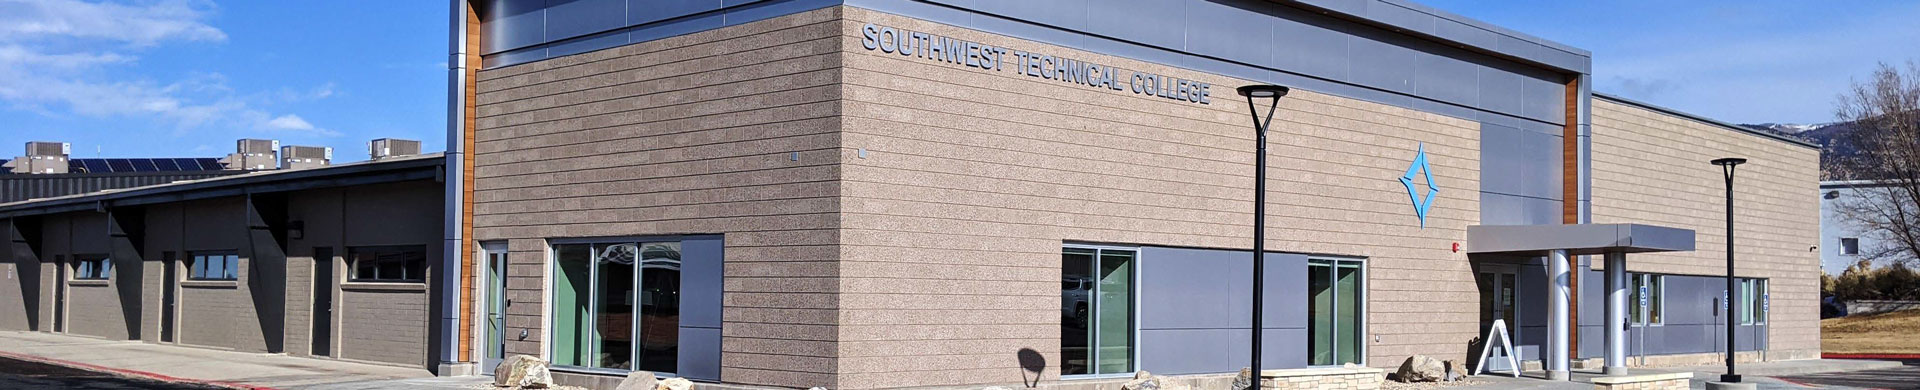 Southwest Tech Building